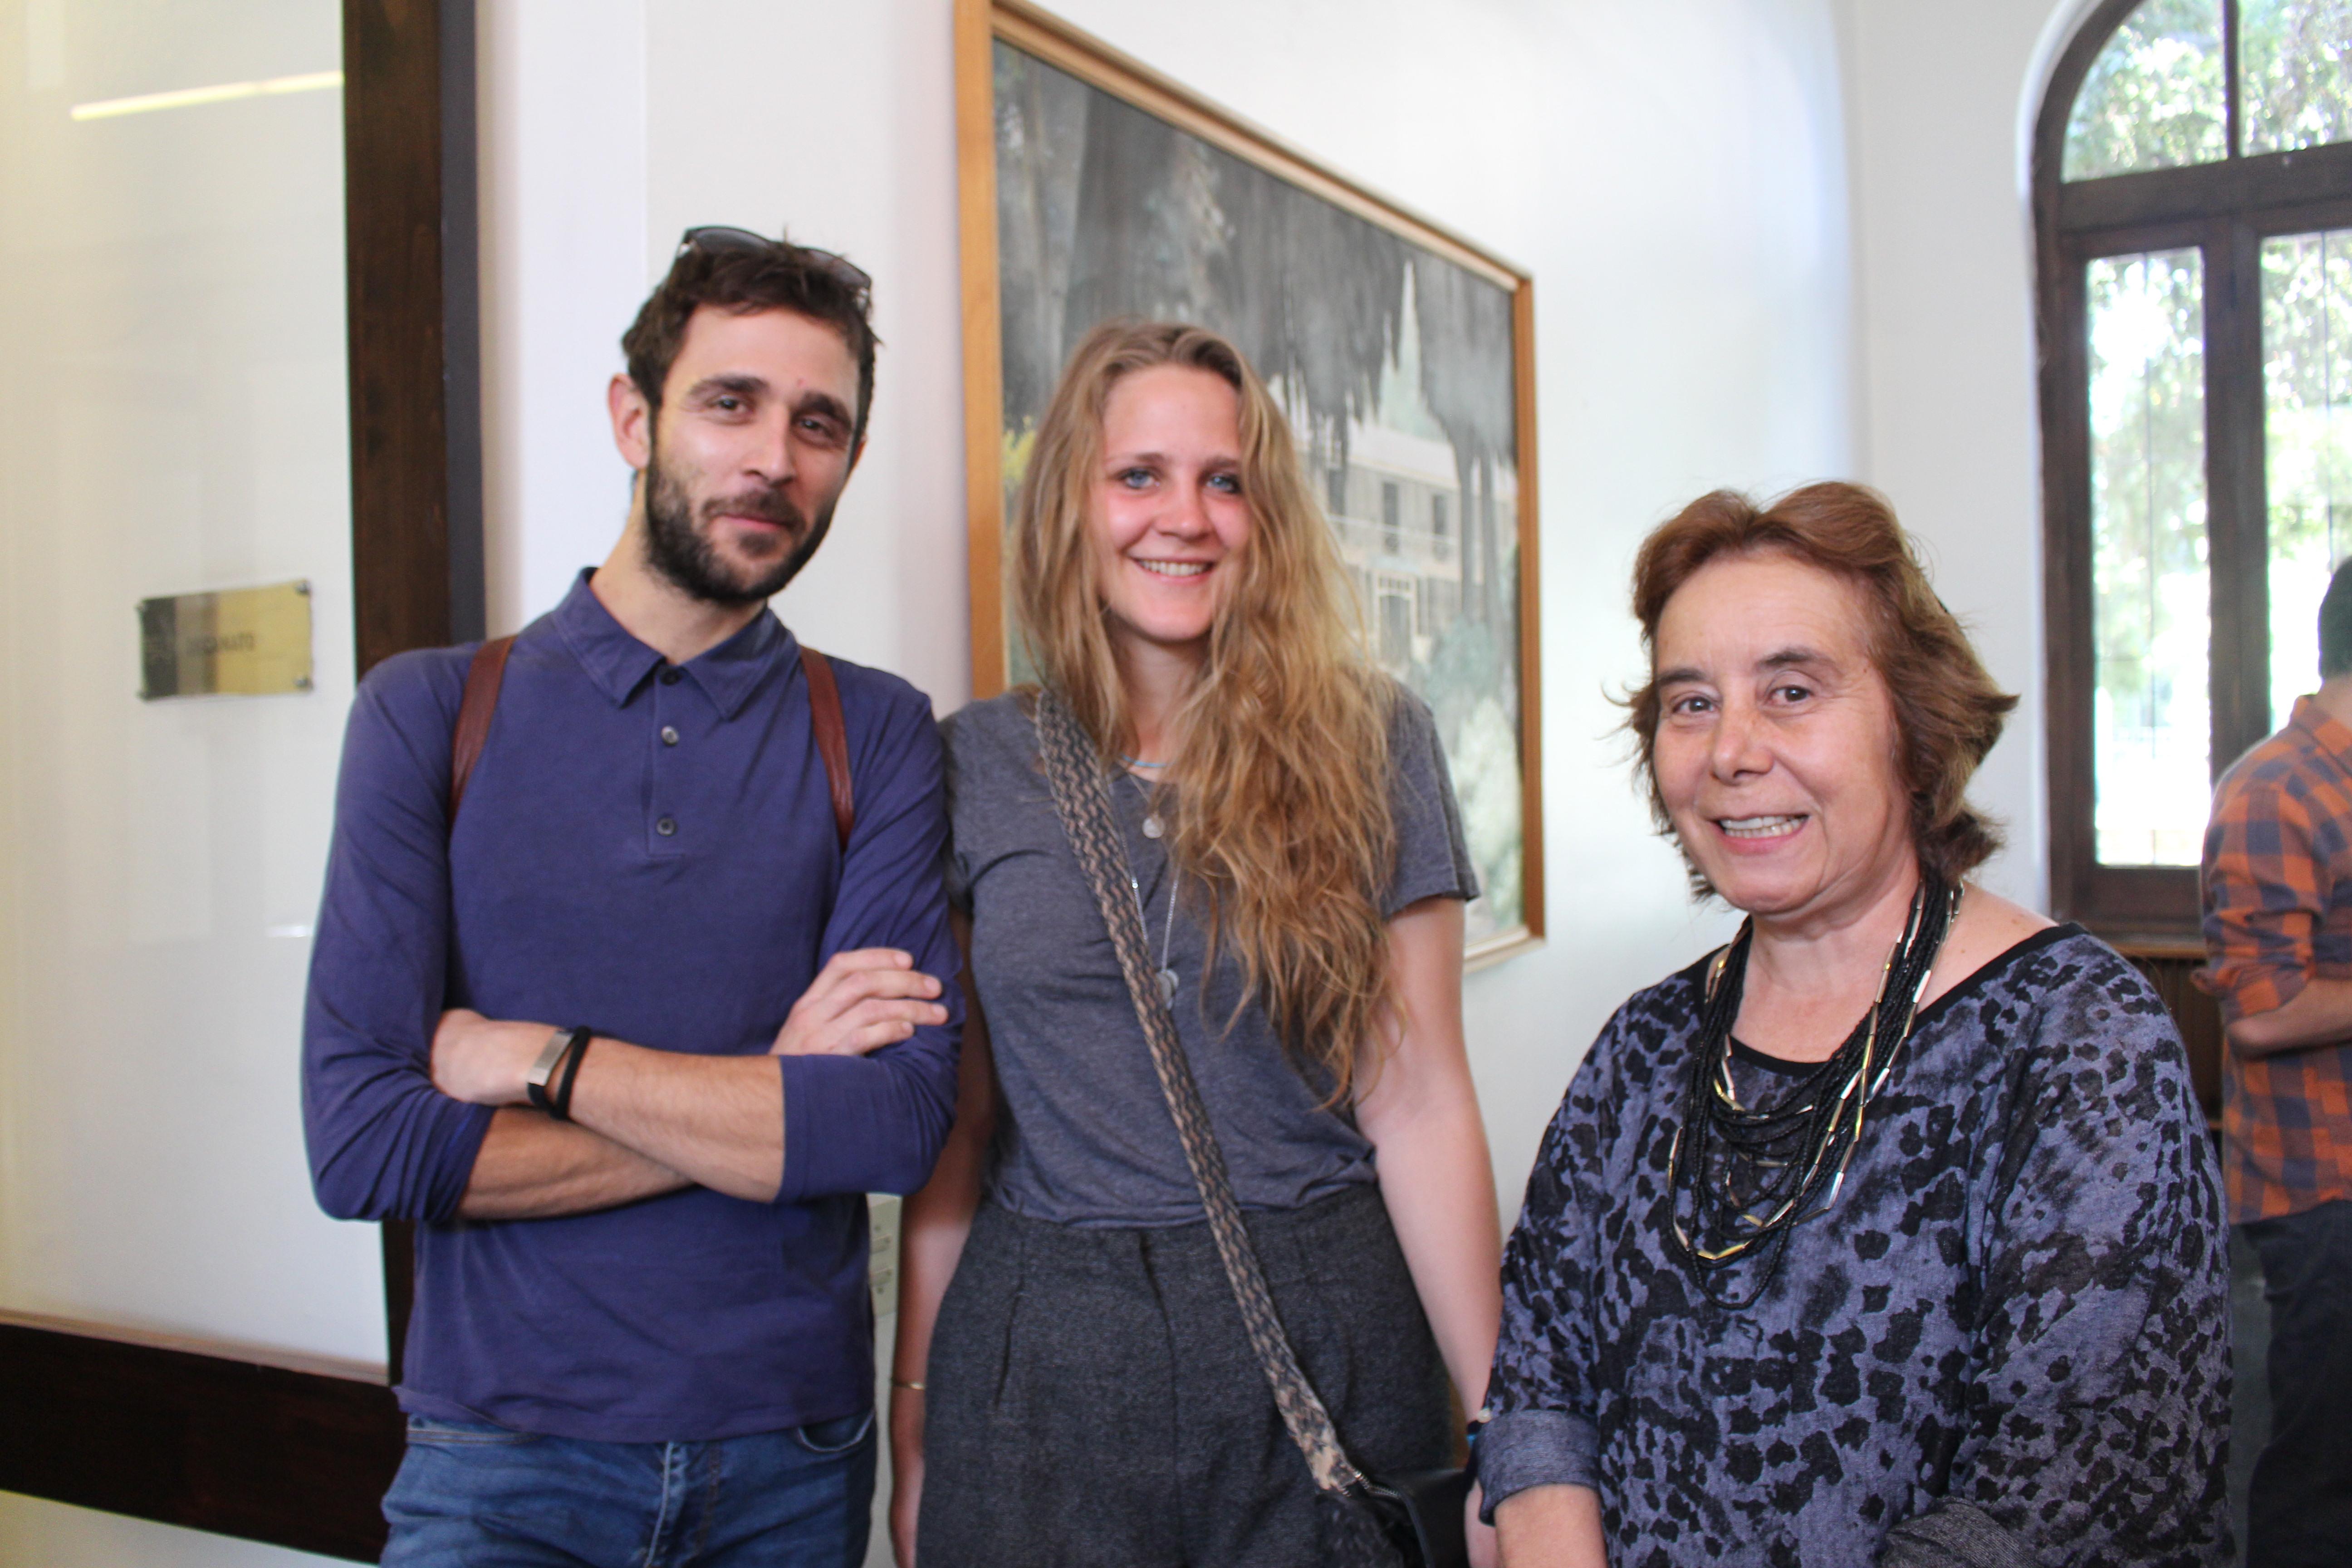 Decana junto a Niccoló Antinielli y a Caterina Dubini primeros alumnos italianos que este año se integran a la FAU gracias al reciente convenio de Doble Titulación con la Universidad de Venecia.